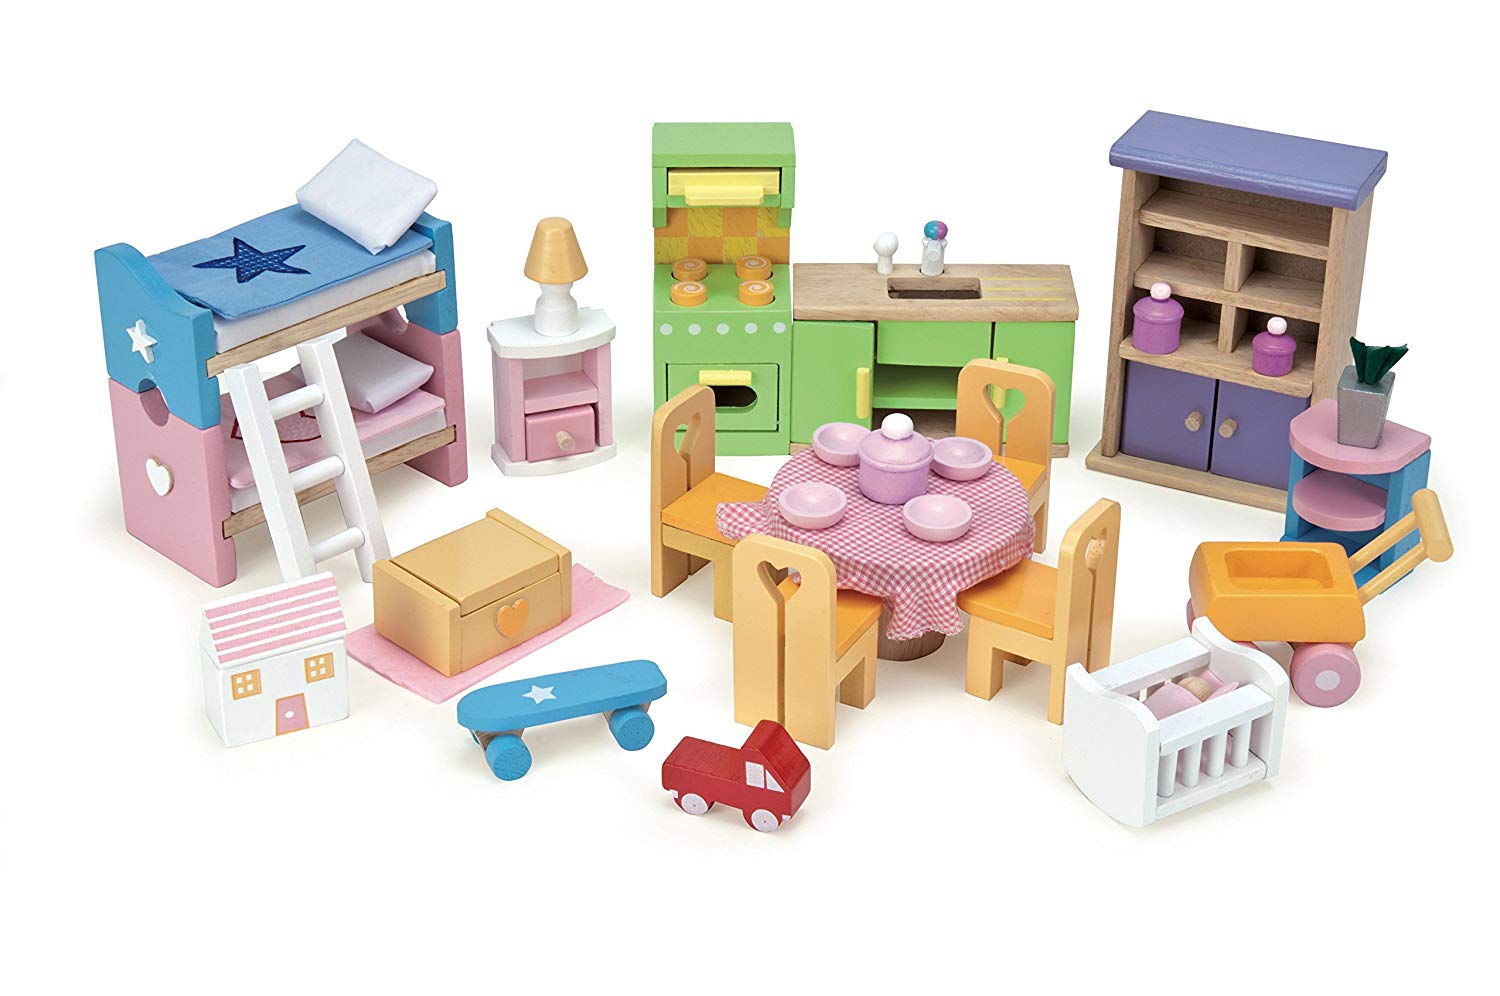 Кукольный домик - Синяя птица, 35 предметов мебели  